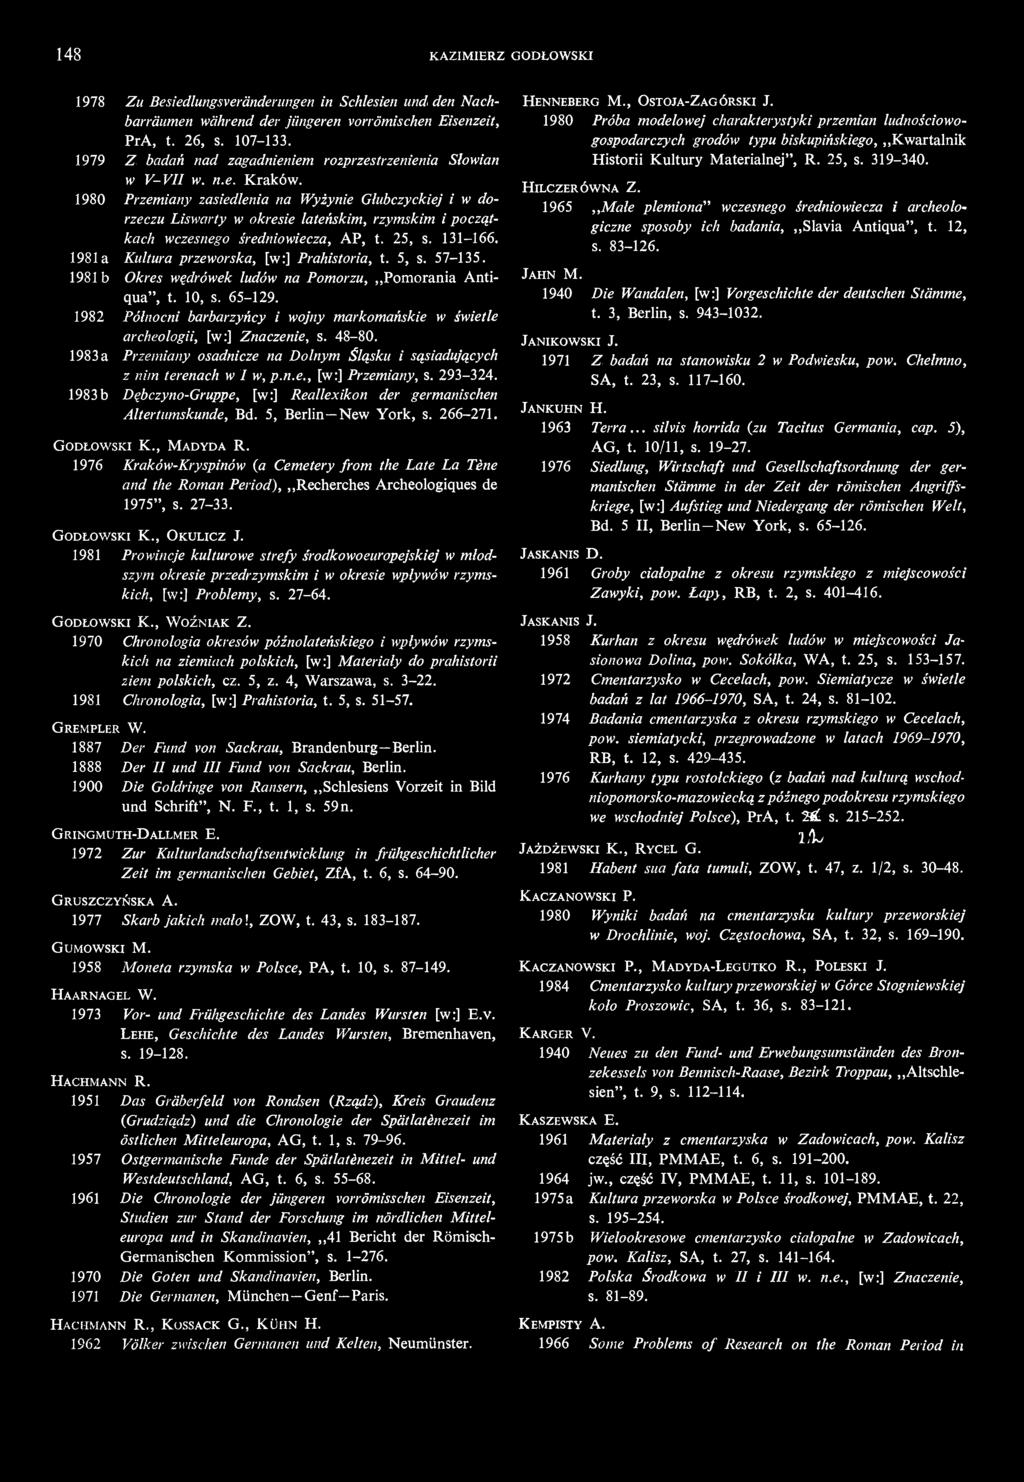 1980 Przemiany zasiedlenia na Wyżynie Głubczyckiej i w dorzeczu Liswarty w okresie lateńskim, rzymskim i początkach wczesnego średniowiecza, AP, t. 25, s. 131-166.